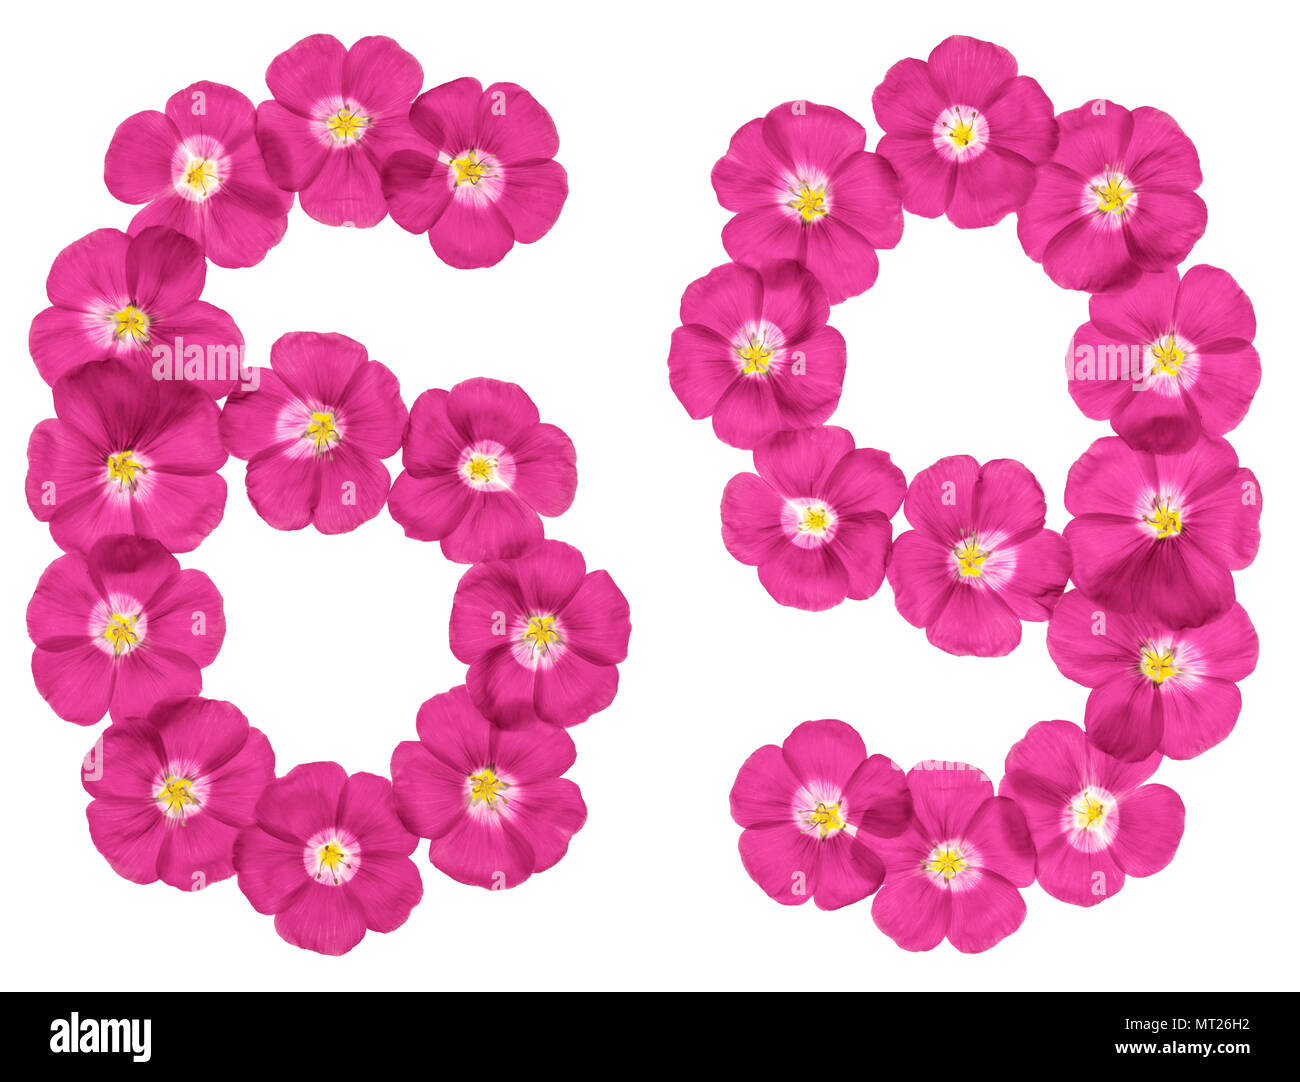 Chiffre arabe 69, soixante-neuf, du rose des fleurs de lin, isolé sur fond blanc Banque D'Images